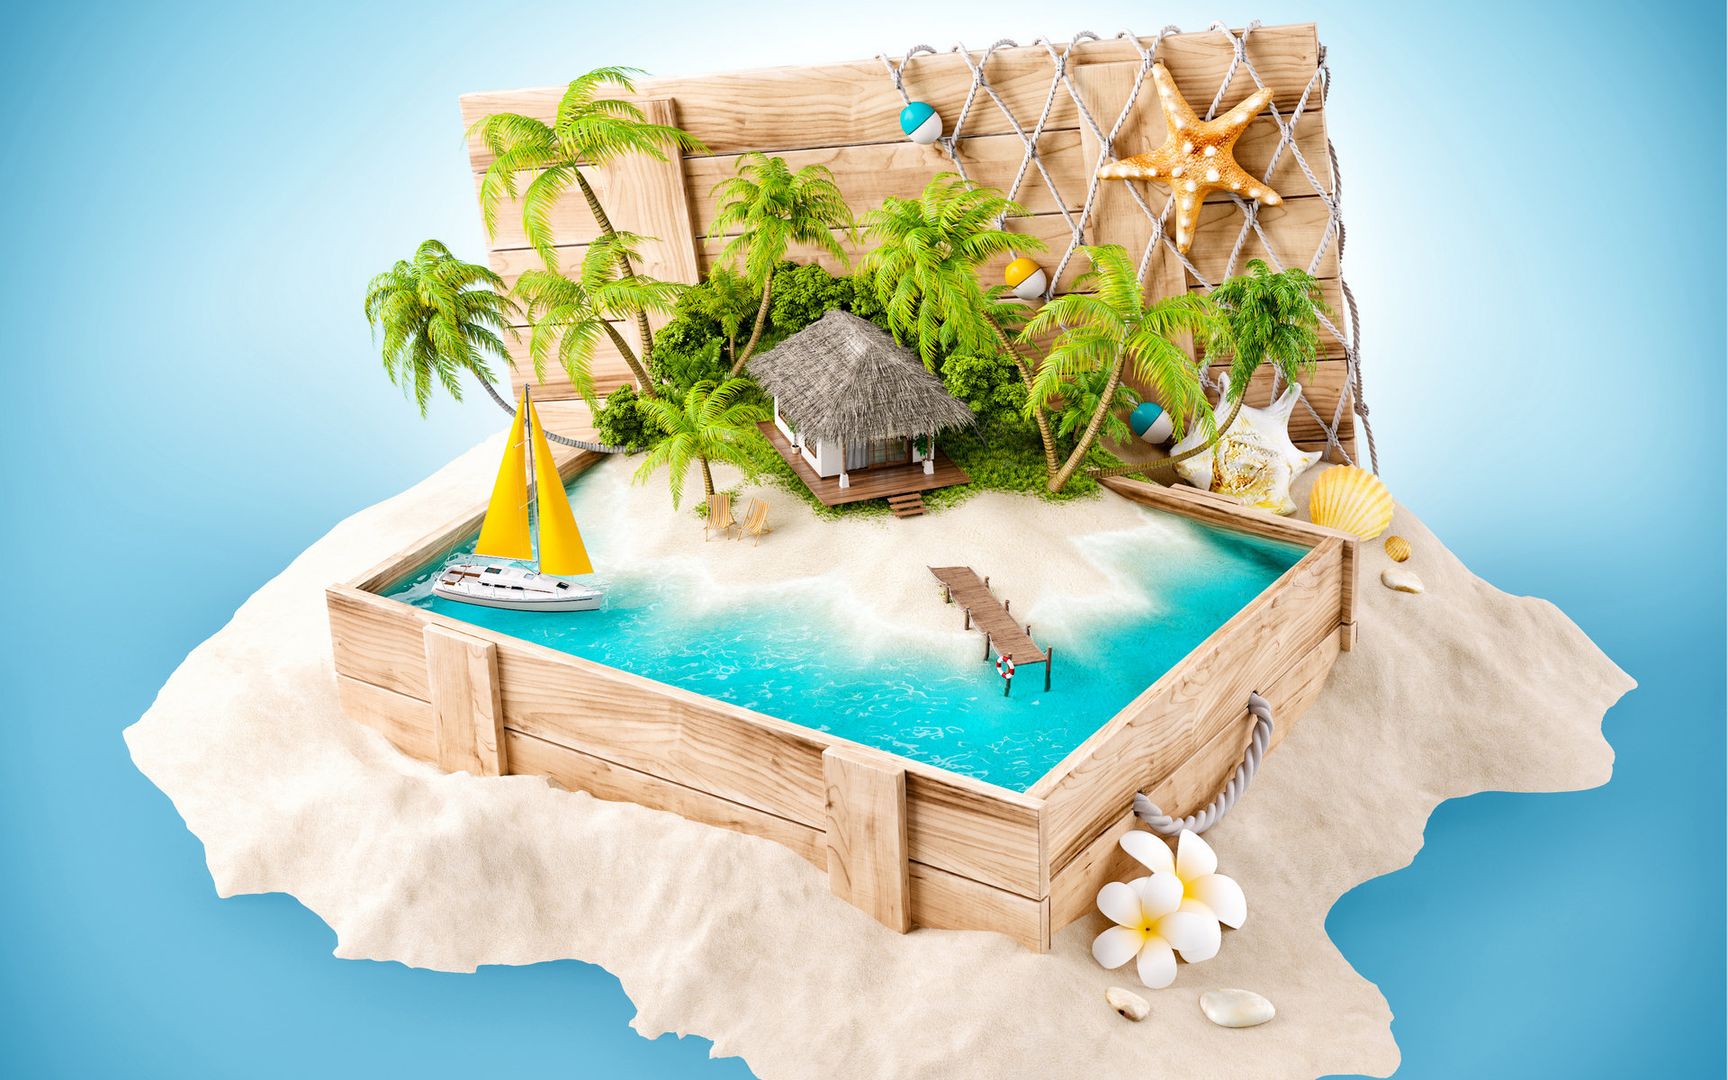 3D立体小岛绿荫椰树唯美风景创意设计大图